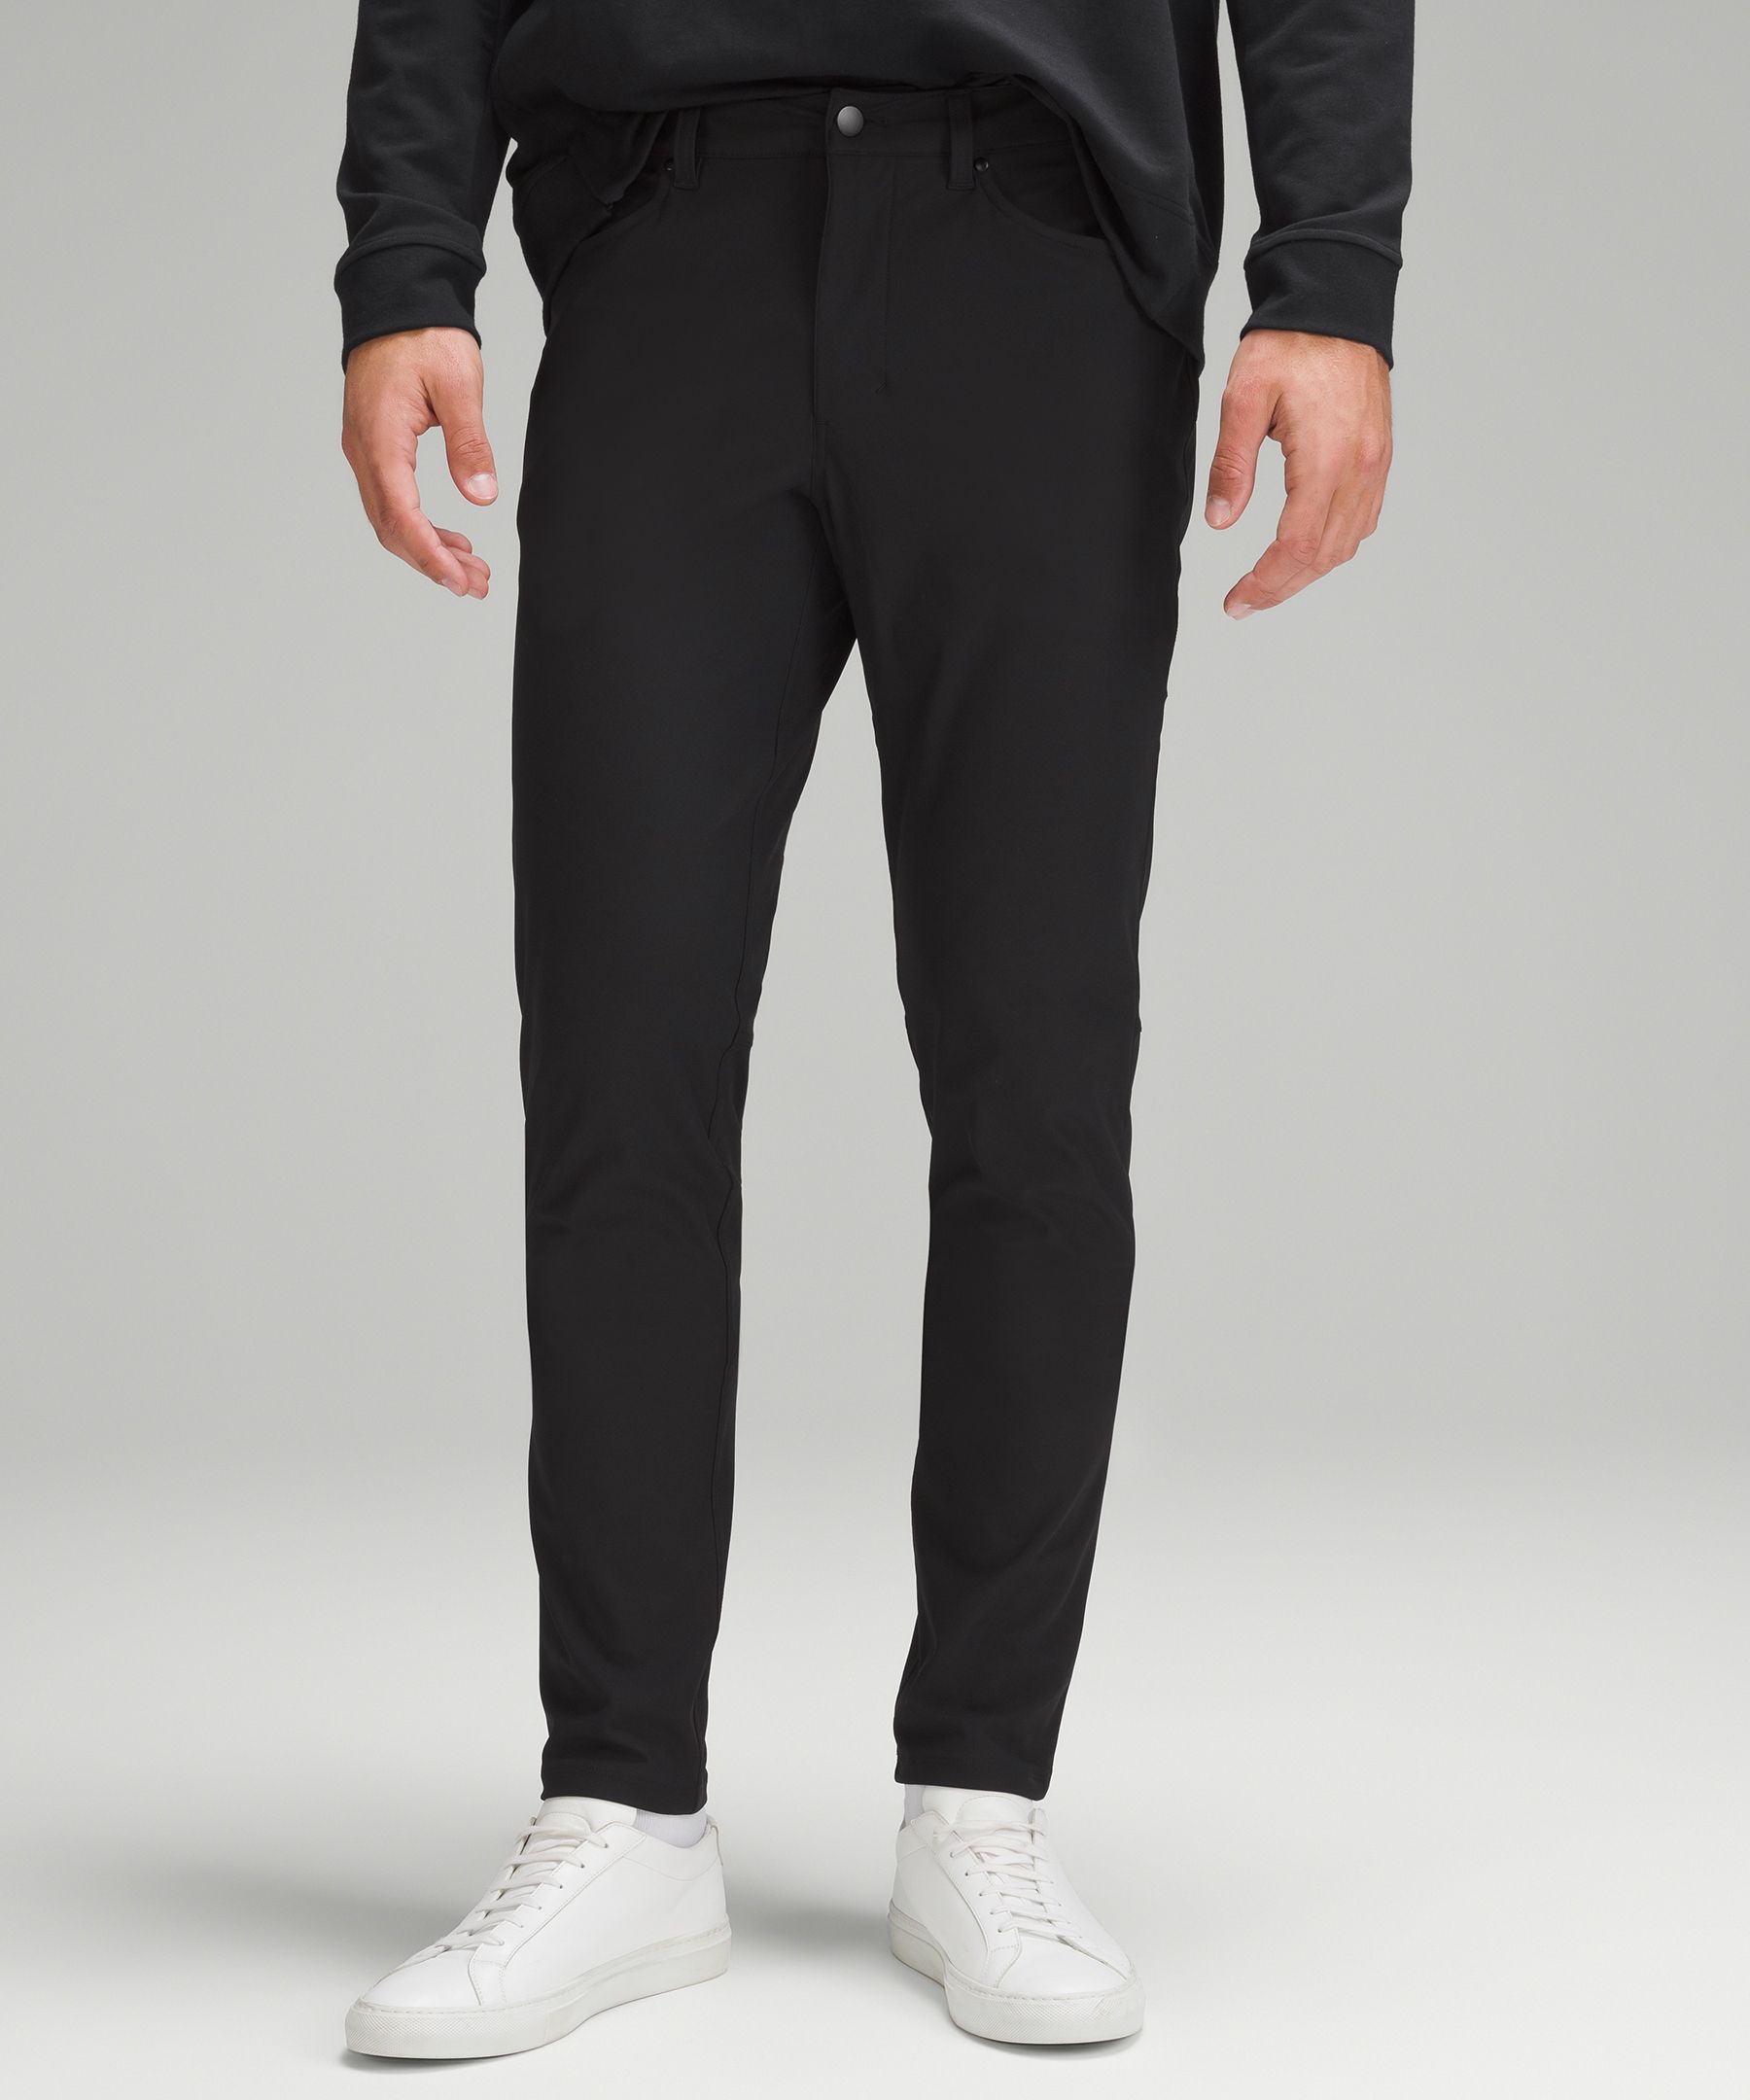 Lululemon Commission Slim-fit Pants 32" Warpstreme In Black